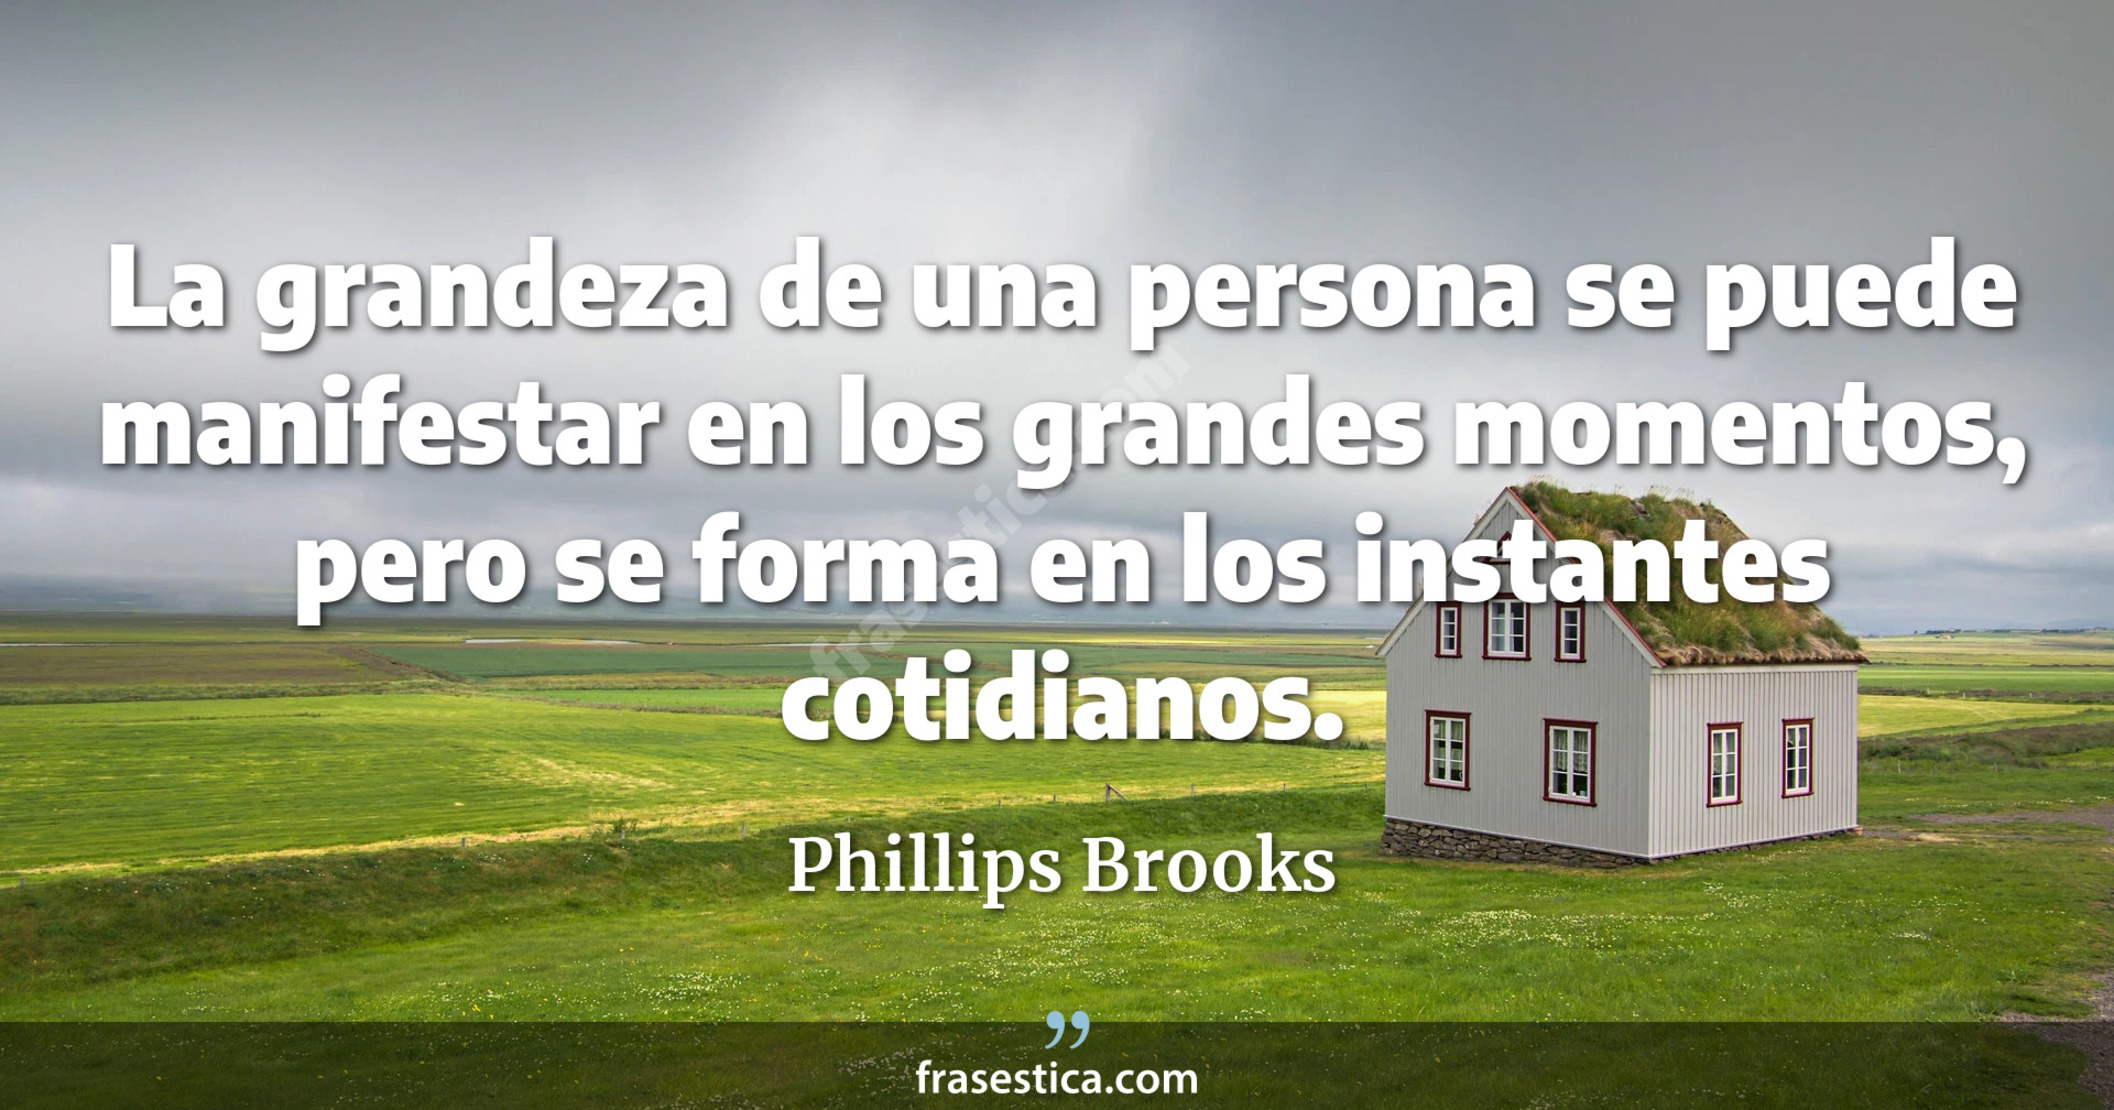 La grandeza de una persona se puede manifestar en los grandes momentos, pero se forma en los instantes cotidianos. - Phillips Brooks